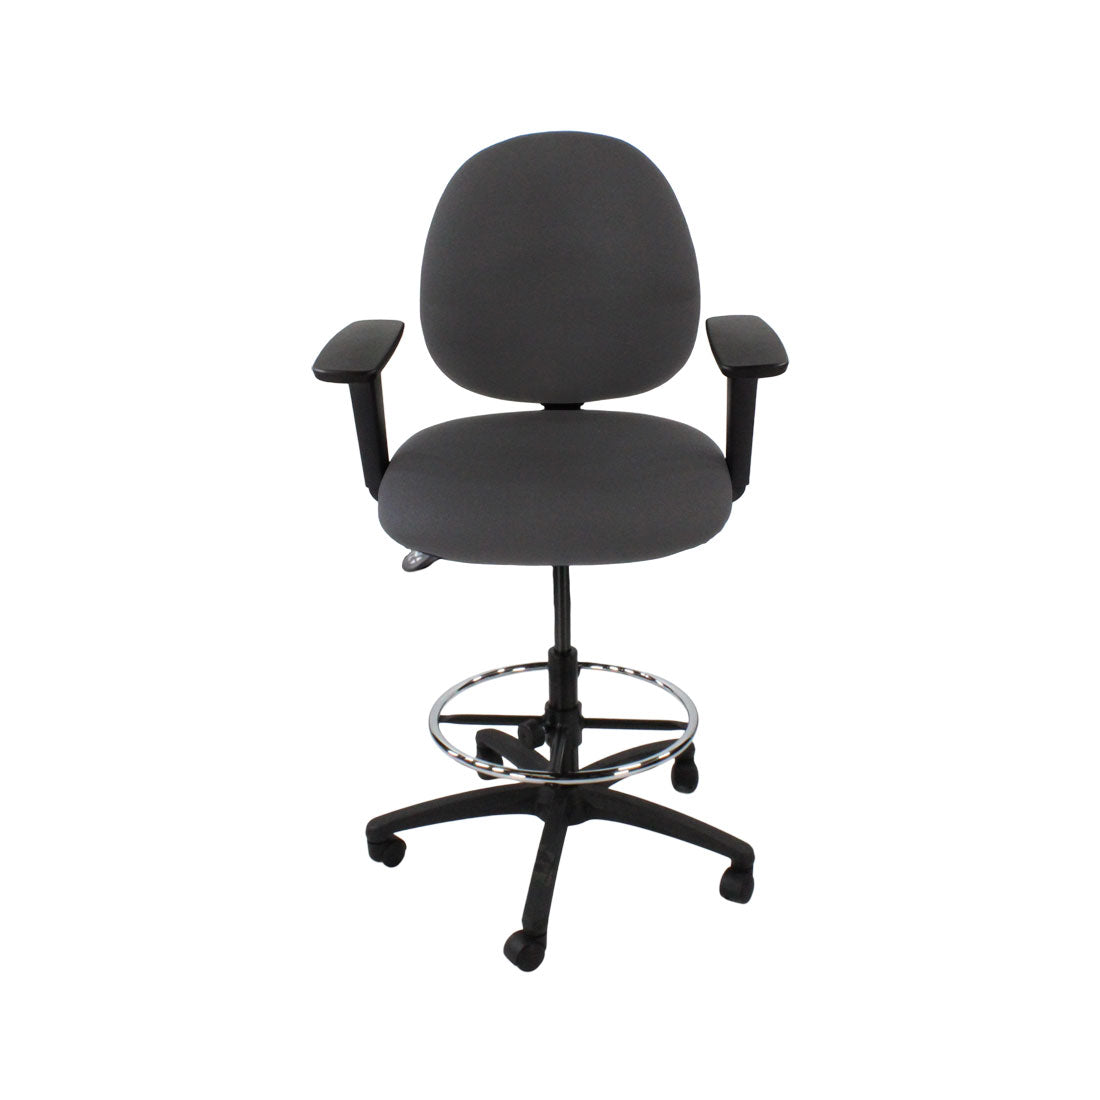 Inhaltsverzeichnis: Scoop Draftsman Chair aus grauem Stoff – generalüberholt